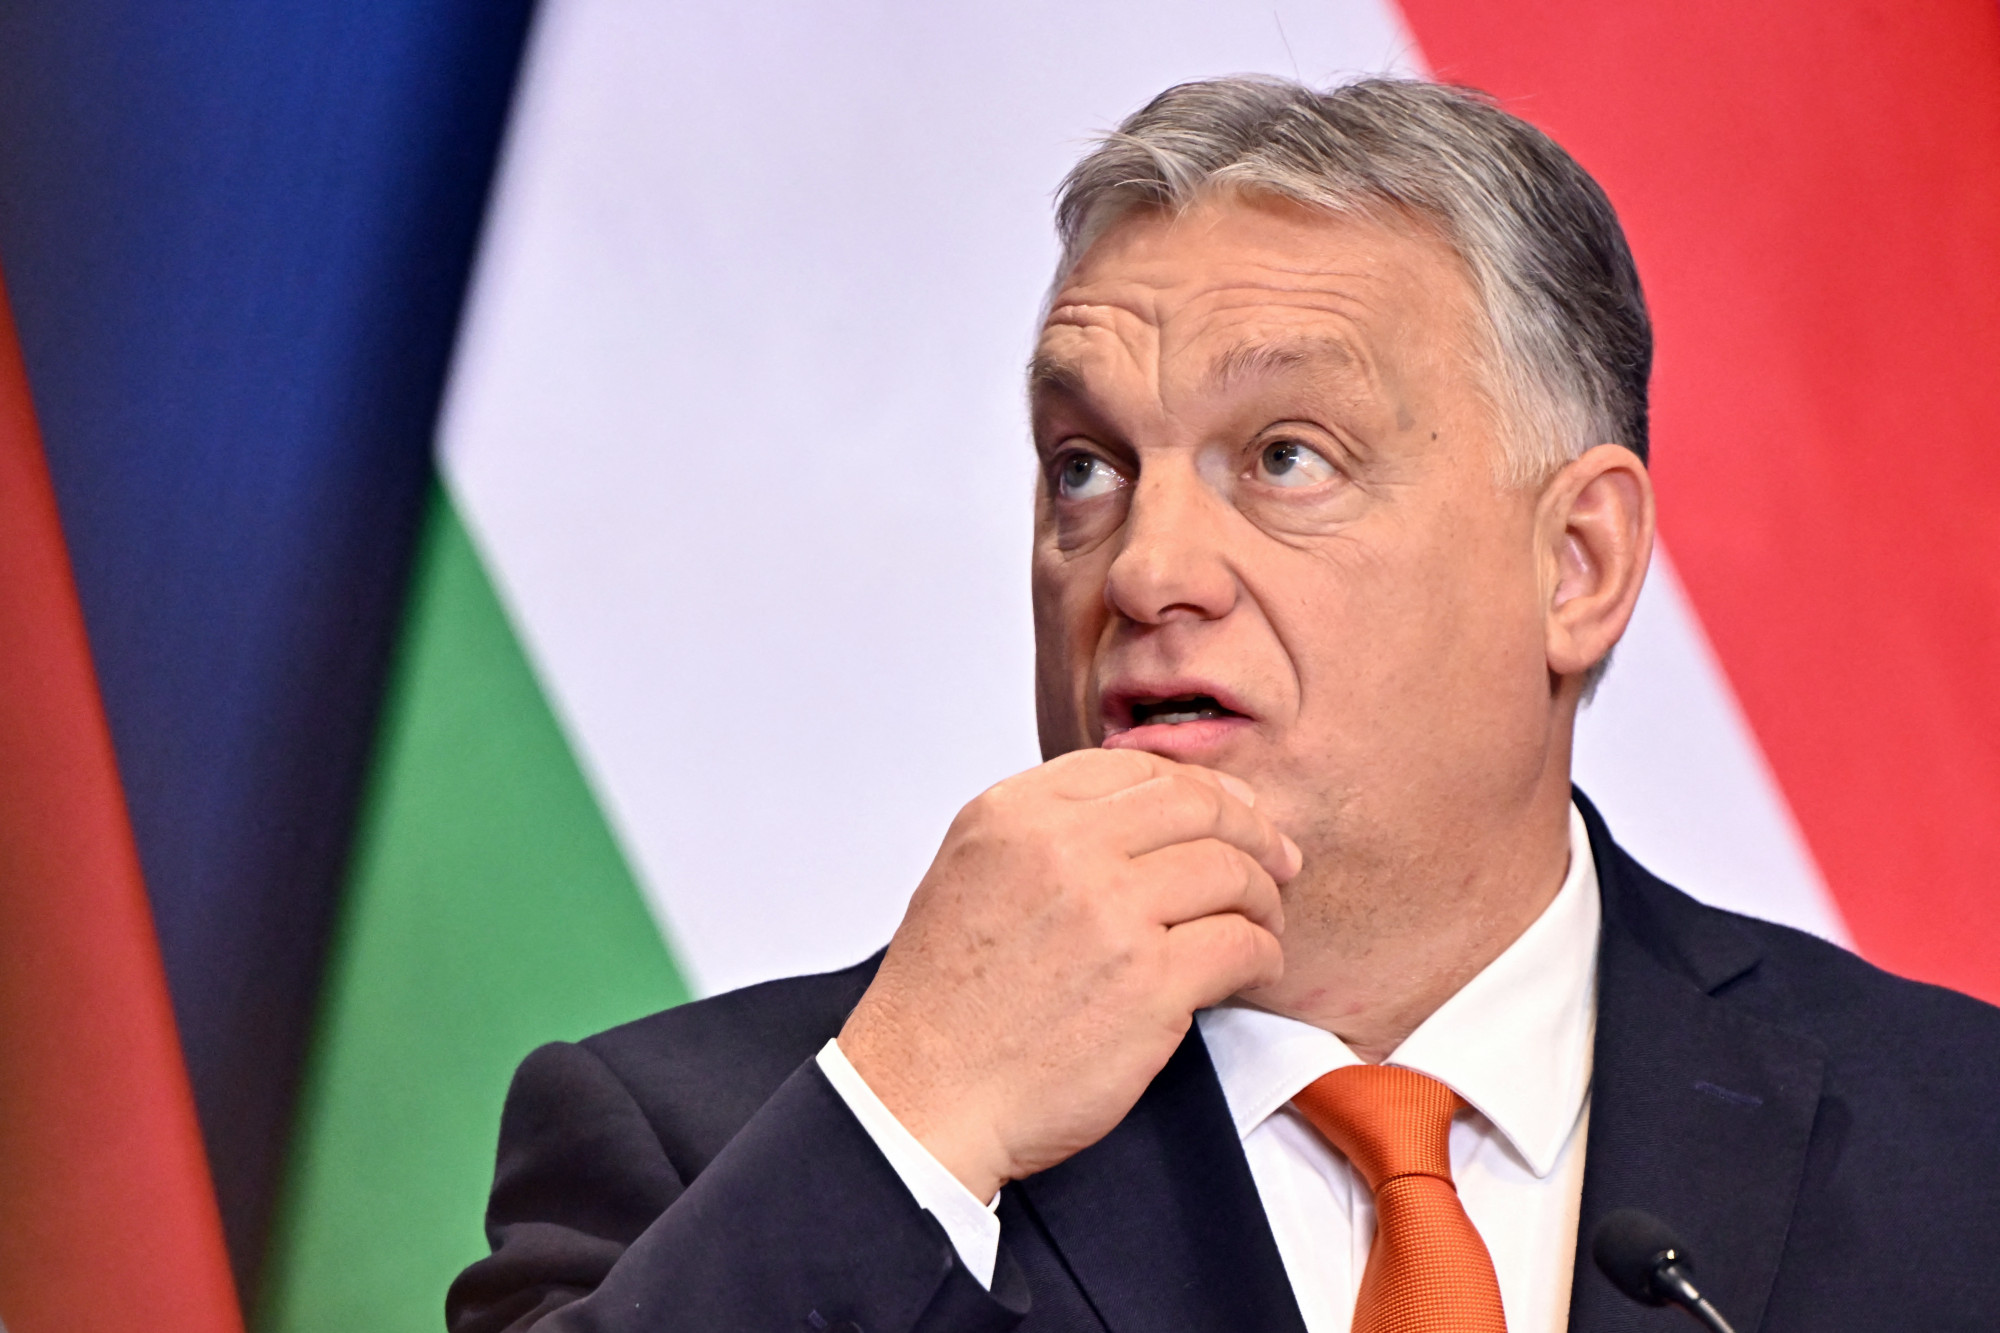 Az amerikai nagykövet feltette a kérdést: mégis hogyan szolgálja magyarokat az, hogy a kormány orosz oligarchákat véd?